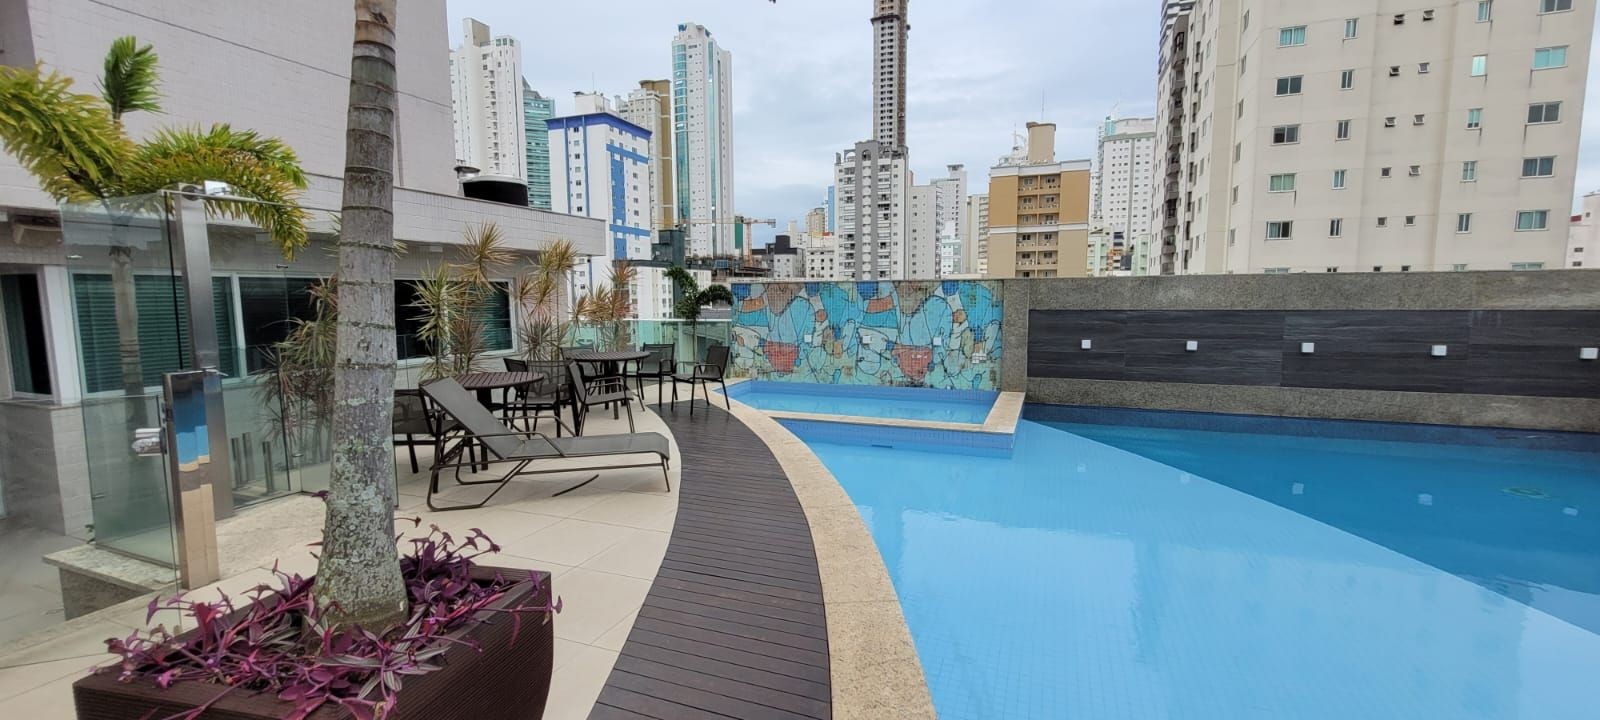 Apartamento Mobiliado, equipado e decorado com 03 suítes, Localizado na Barra Sul em Balneário Camboriú - SC